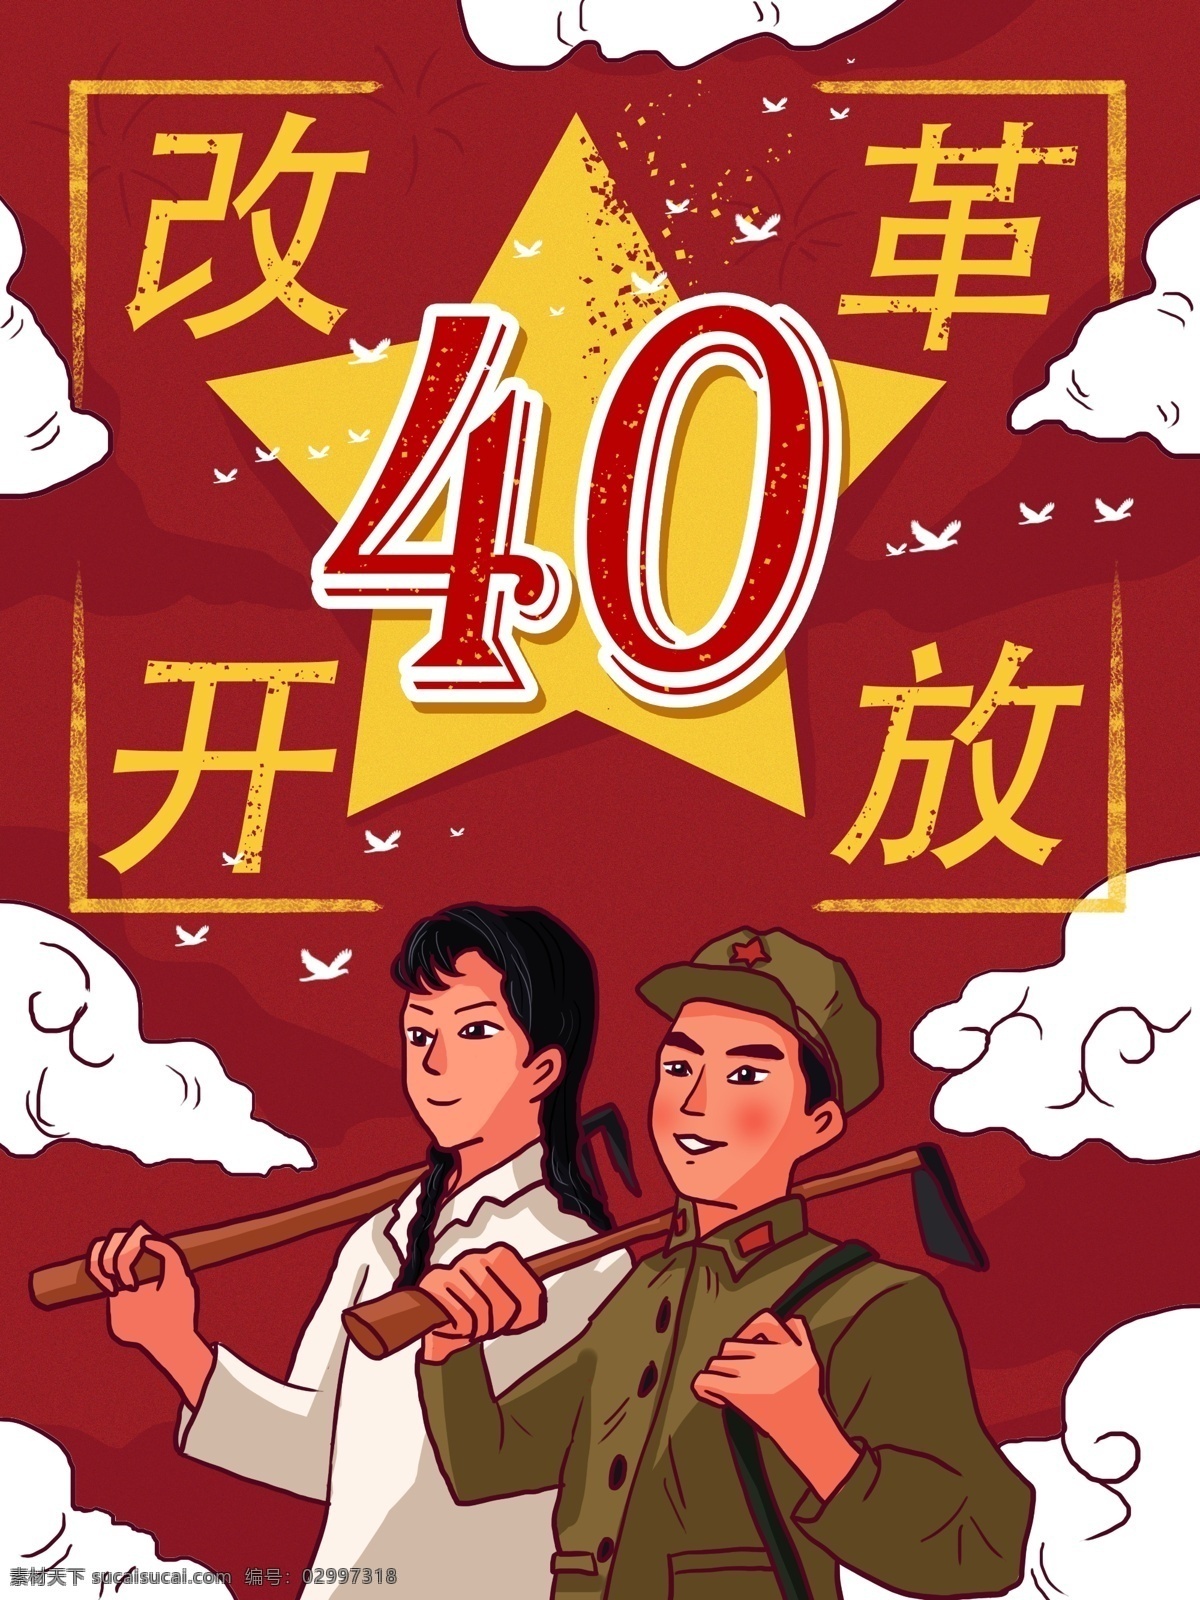 改革开放 年 红色 复古 大字报 劳动 人民 插画 卡通 人物 40周年 竖版 劳动人民